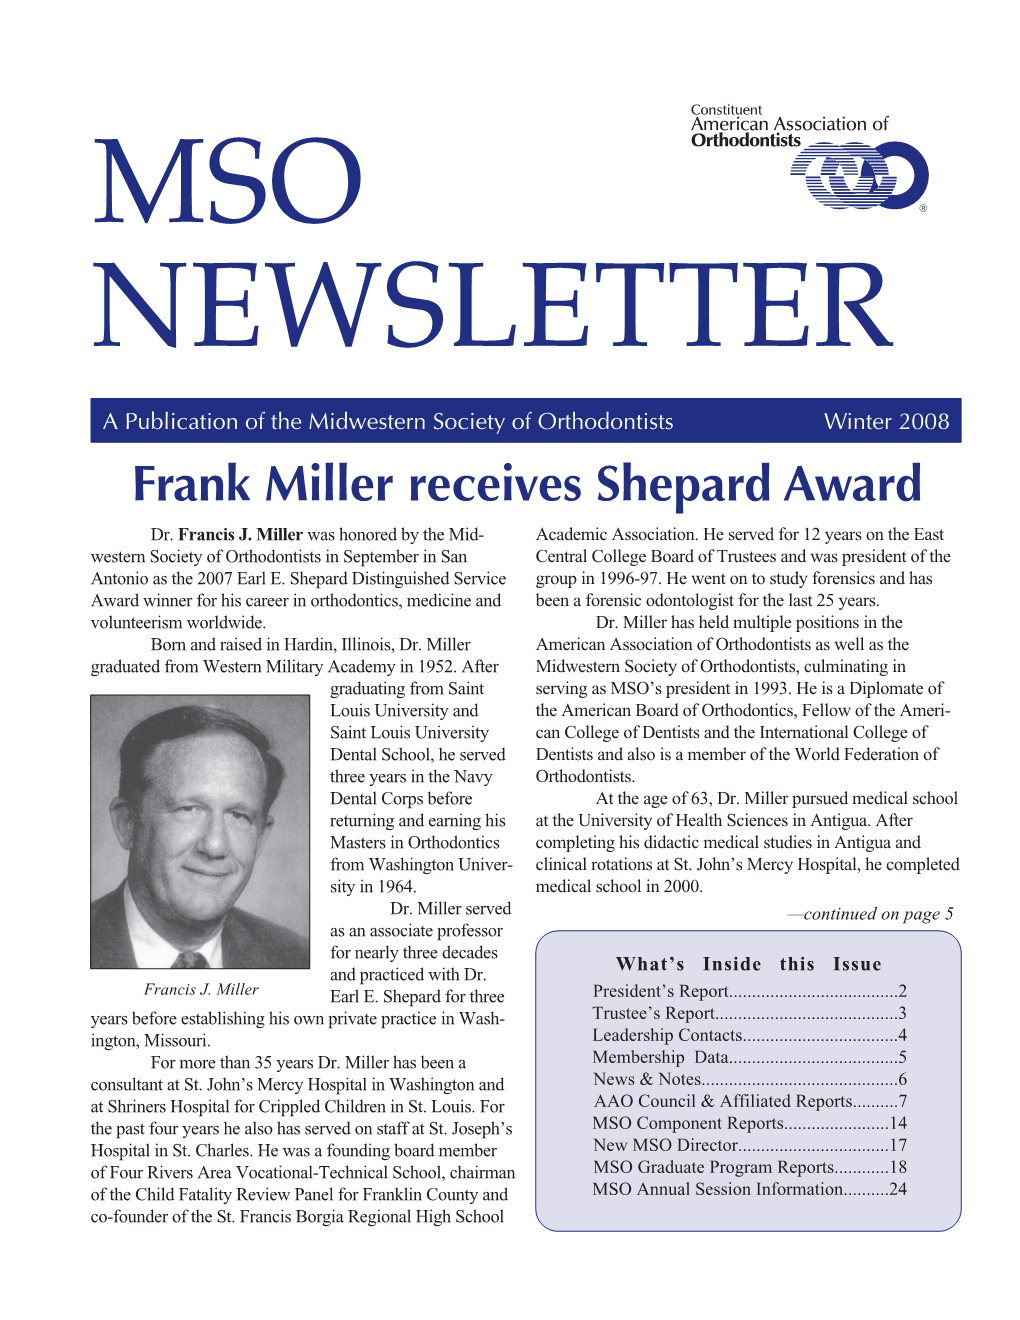 Frank Miller Receives Shepard Award Dr